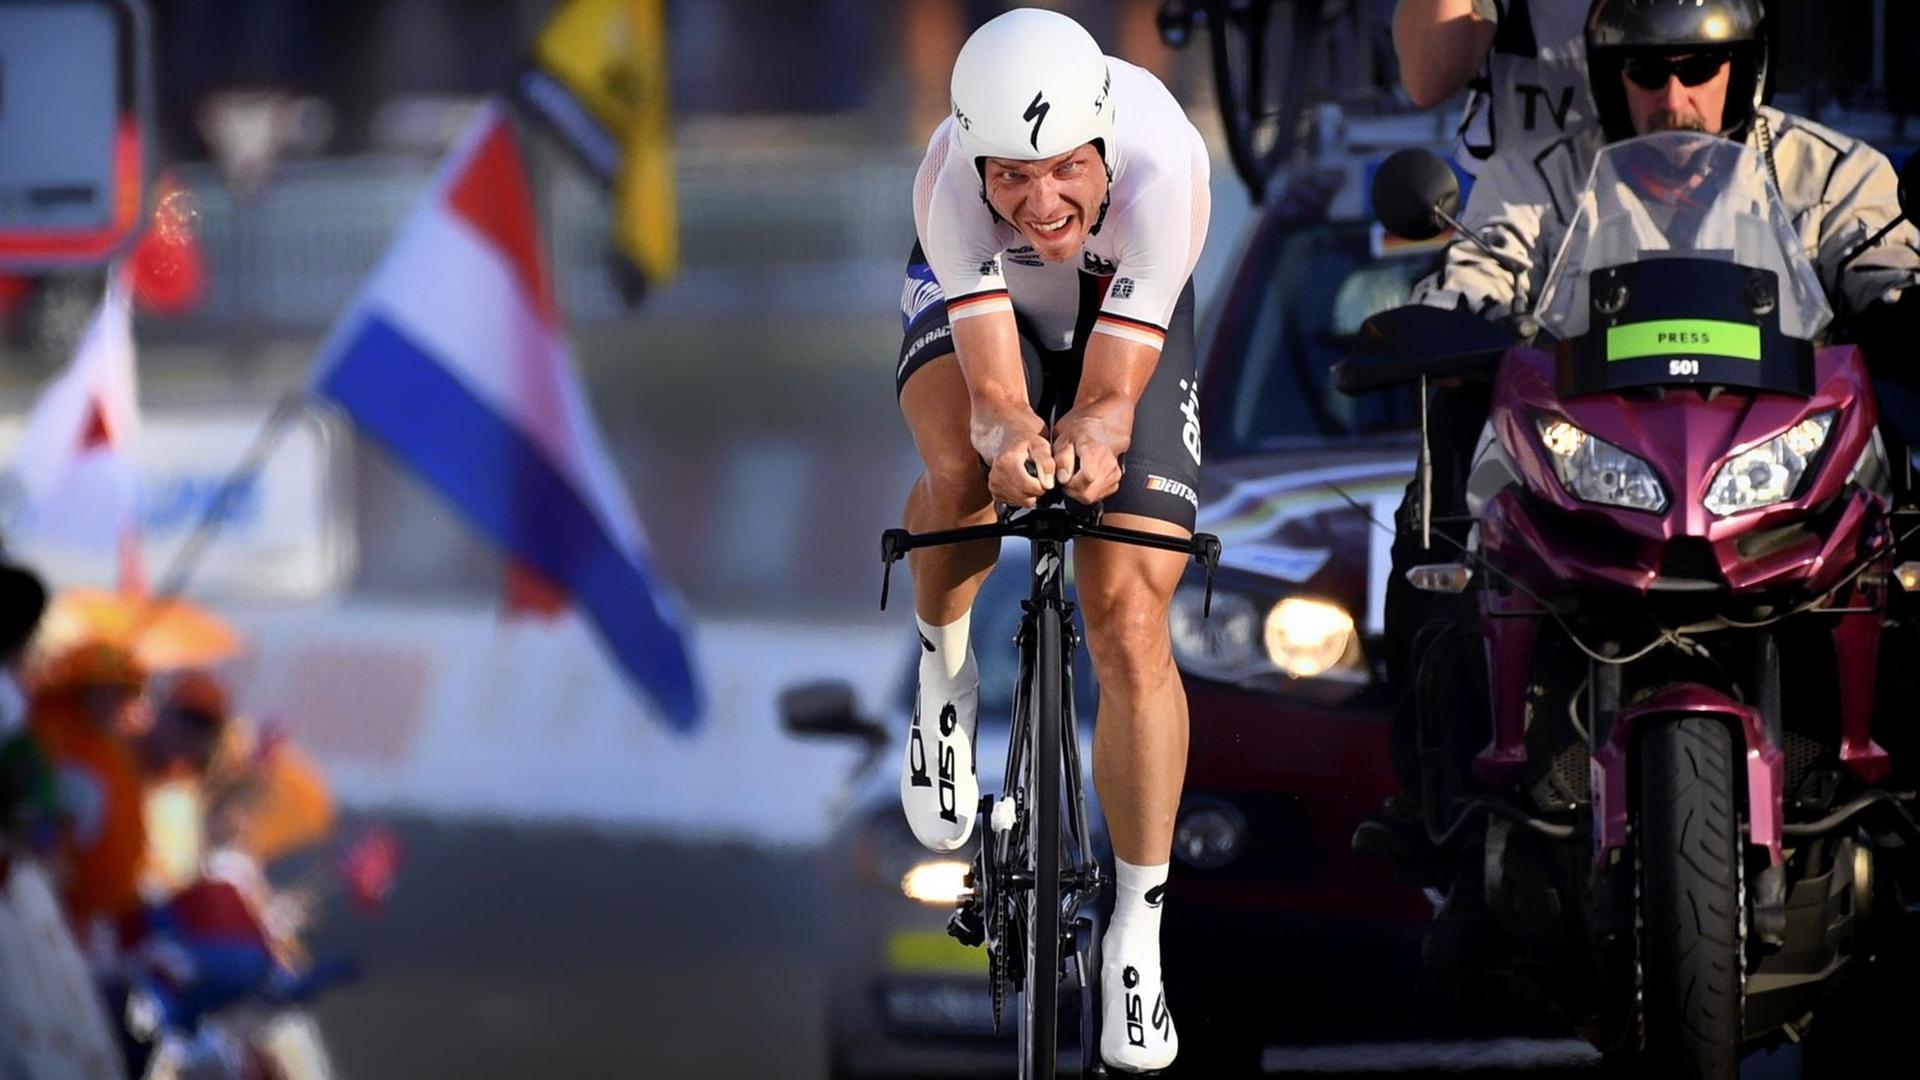 Der deutsche Radfahrer Tony Martin hat die Welt-Meisterschaft beim Rad-Rennen in dem Land Katar gewonnen.